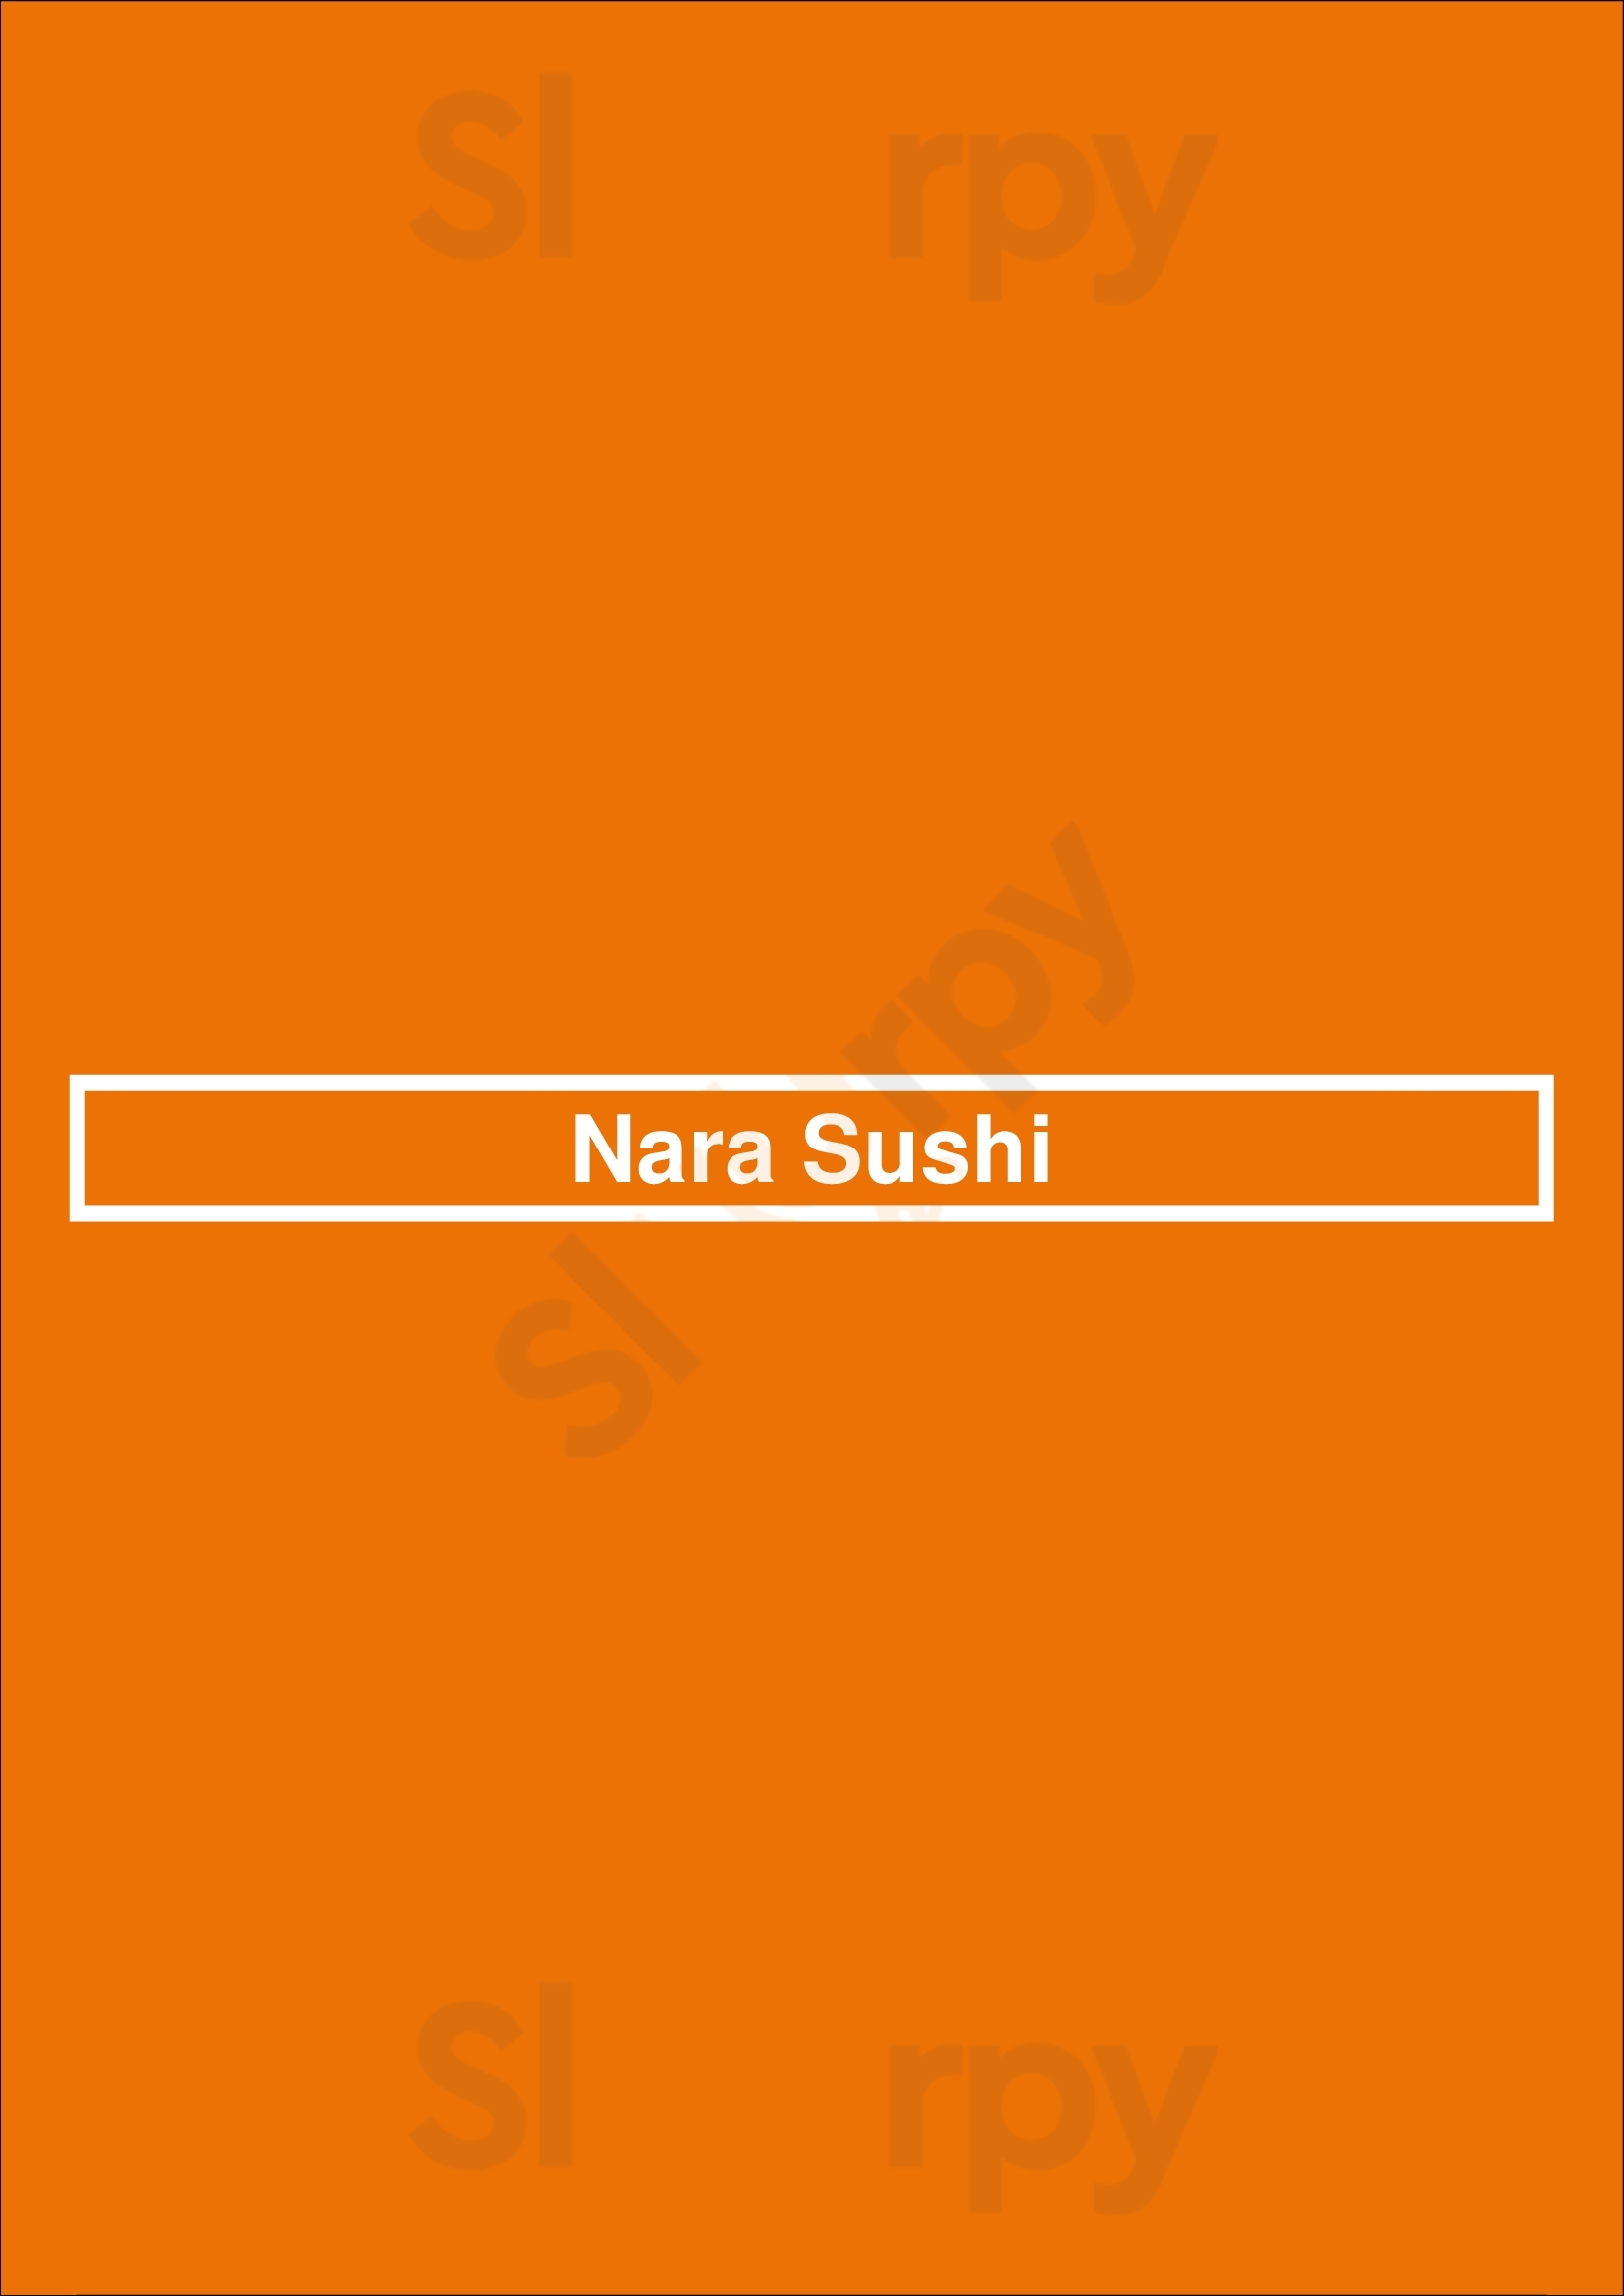 Nara Sushi Kitchener Menu - 1